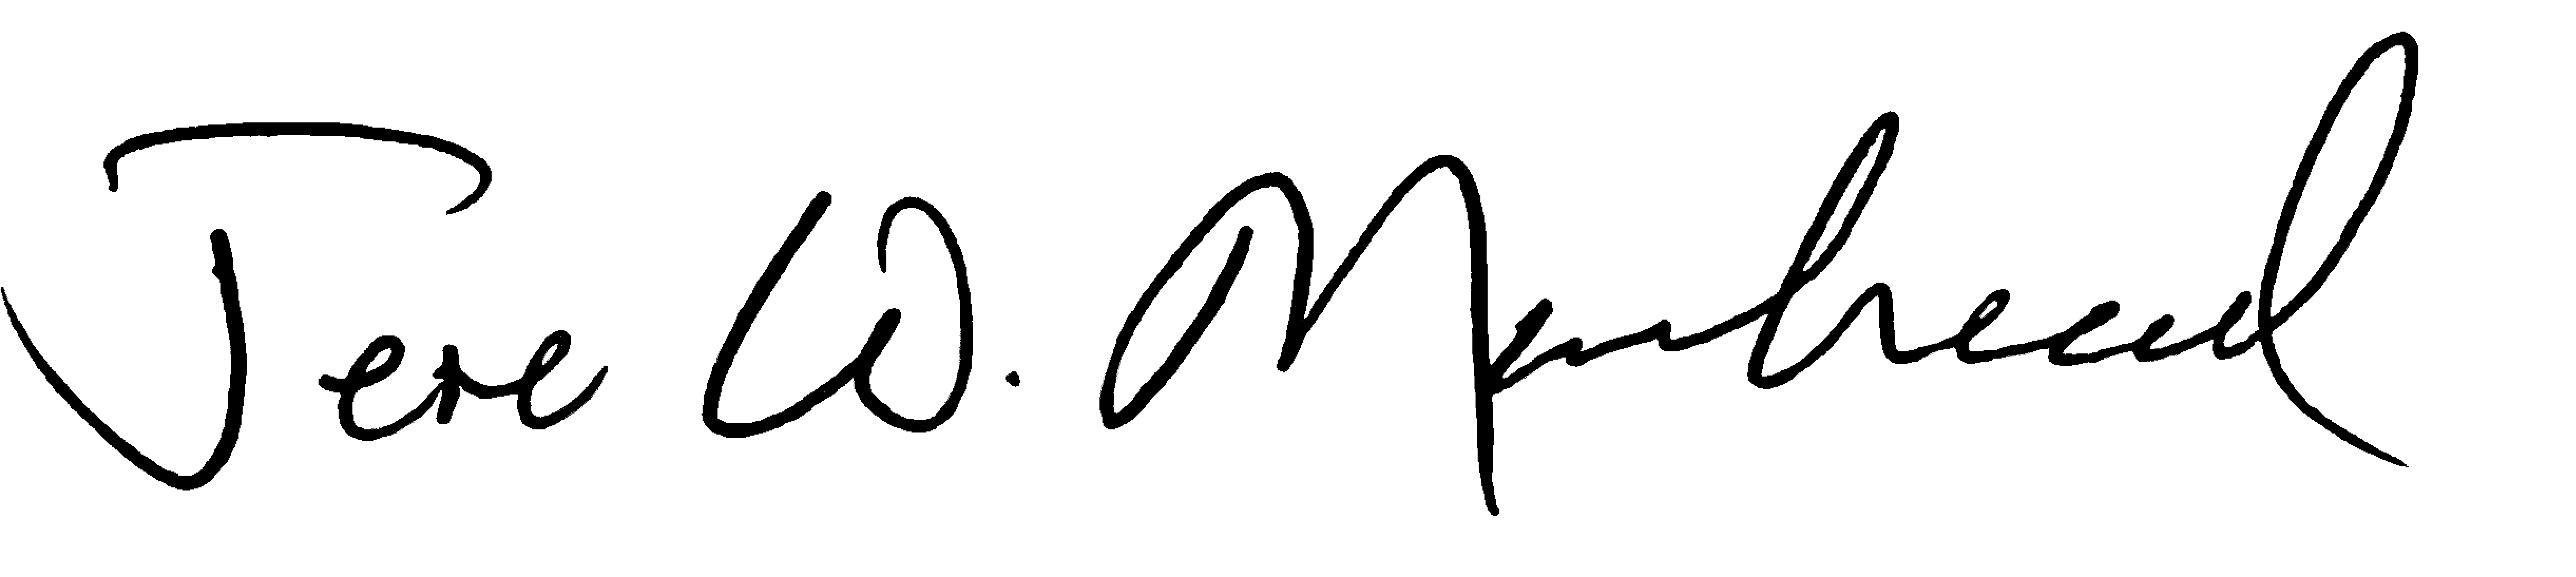 Jere Moorhead's signature